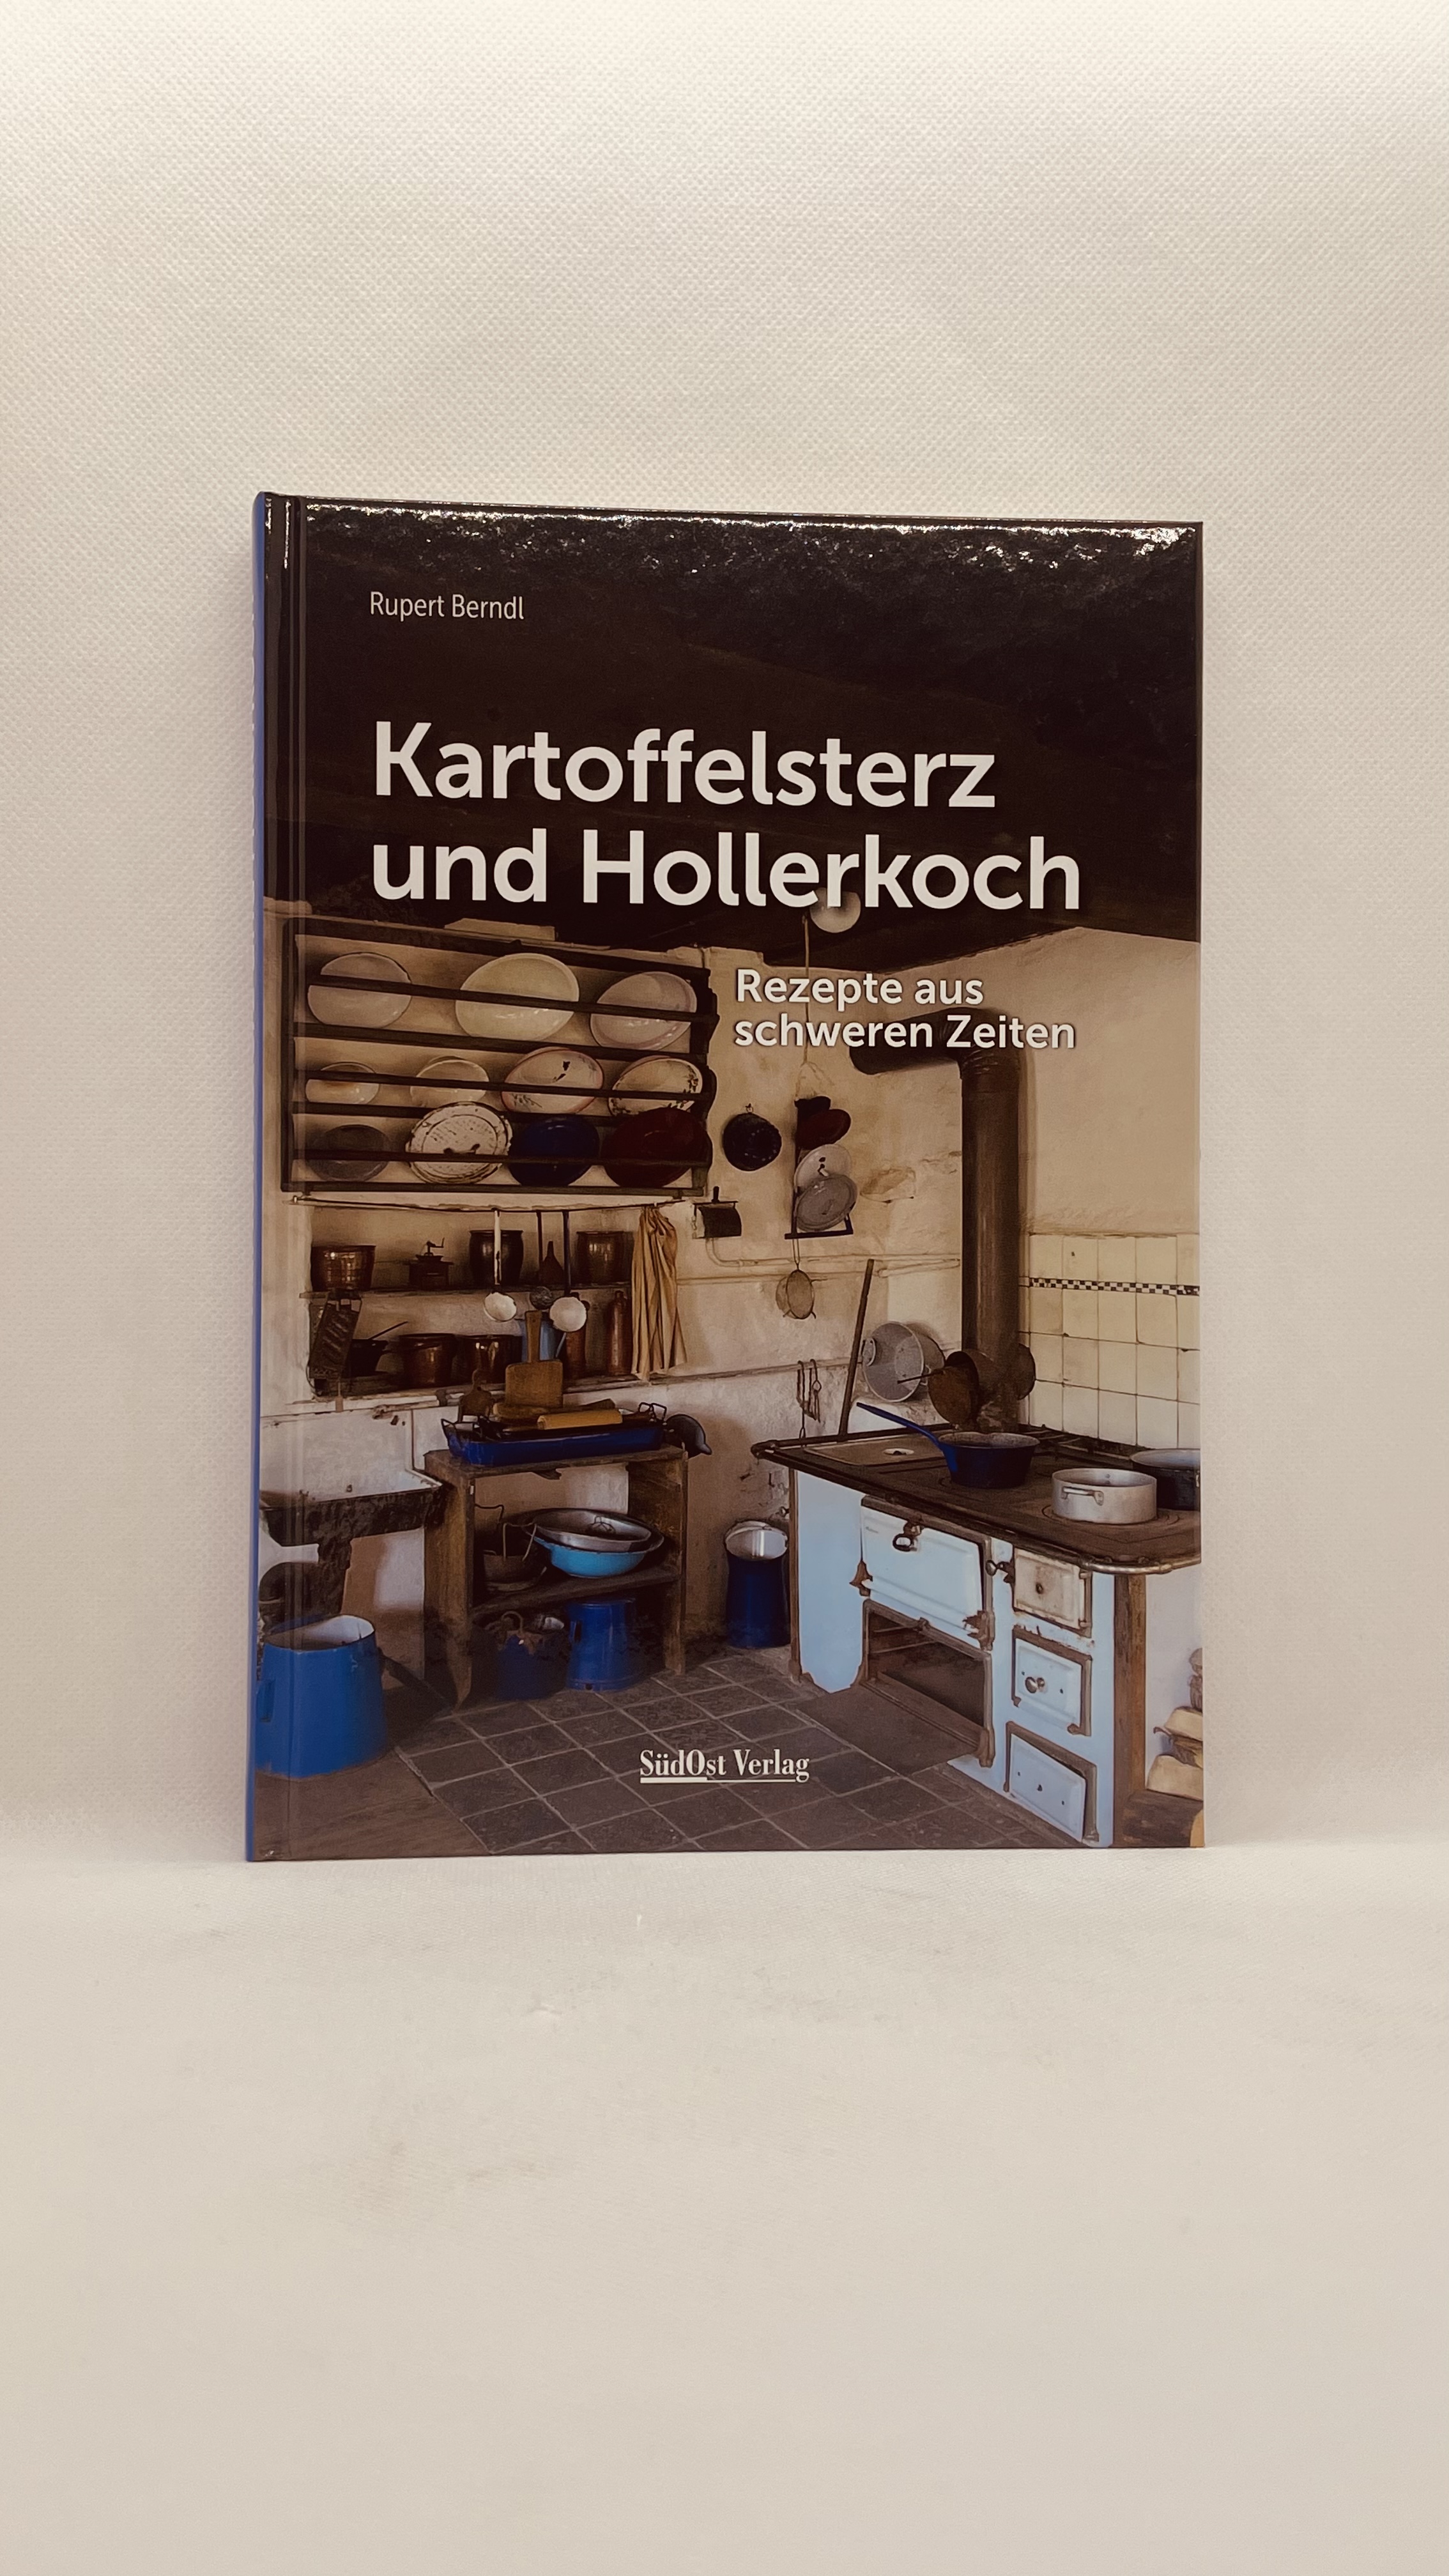 Rupert Brendl Kartoffelsterz und Hollerkoch. Foto: ARBERLAND REGio.GmbH.